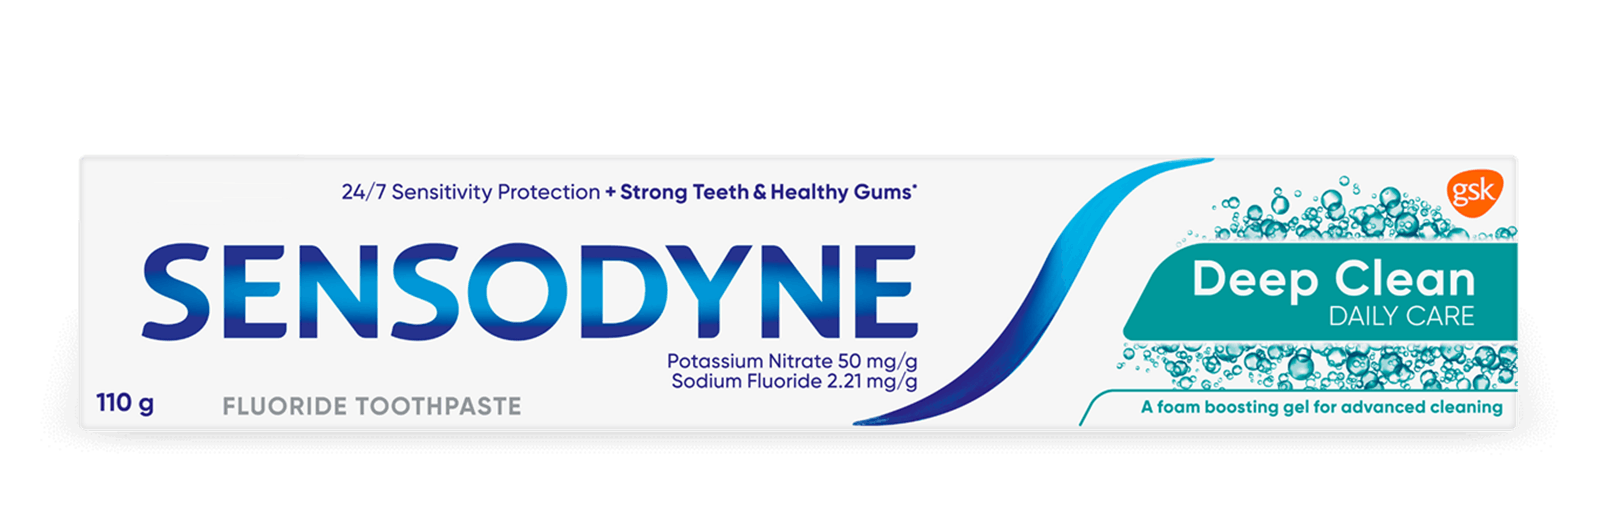 Sensodyne Deep Clean toothpaste